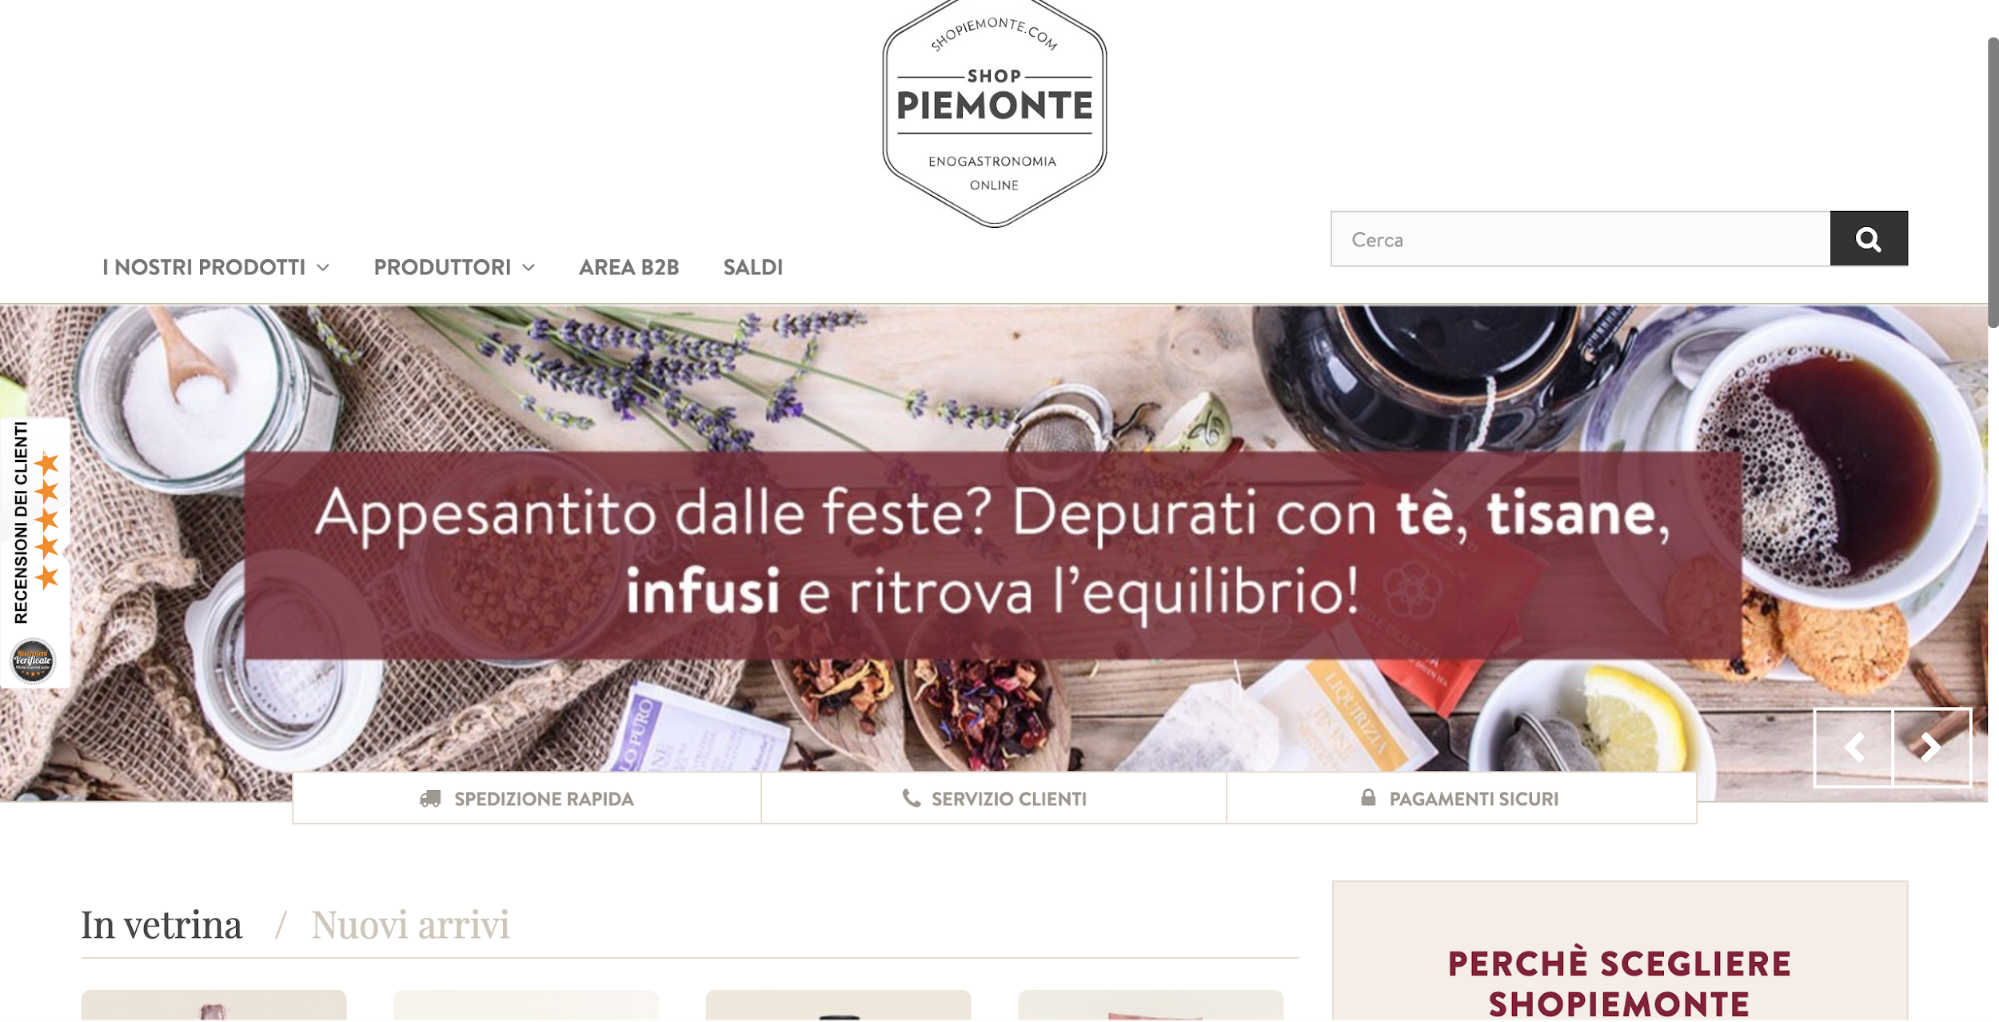 Shop Piemonte